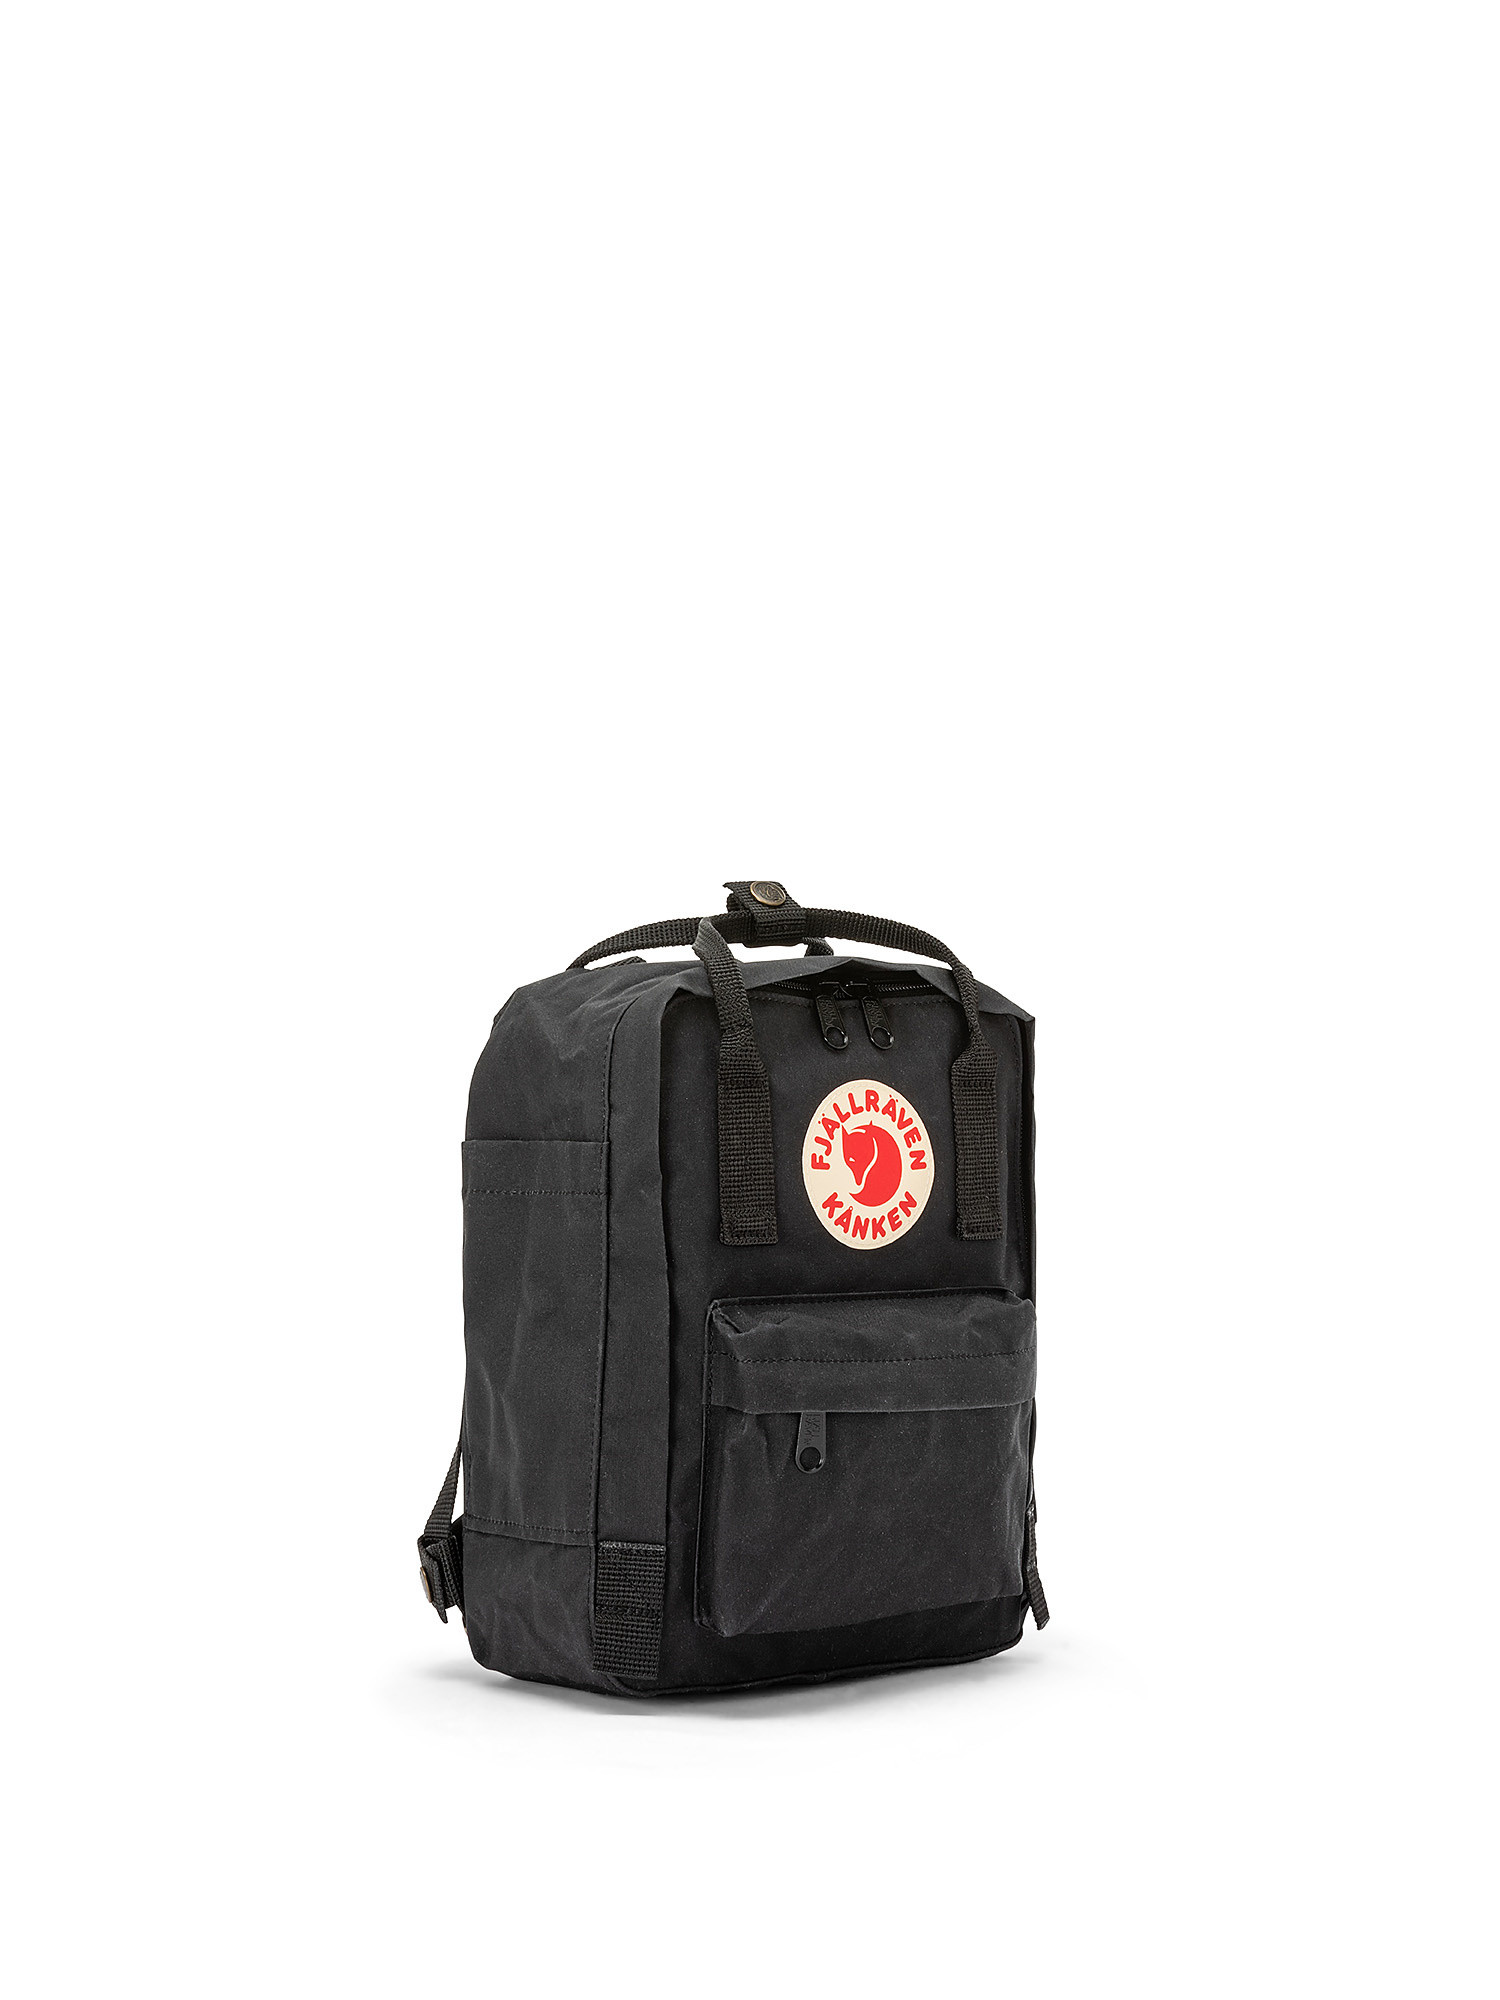 Kanken mini backpack, Black, large image number 1